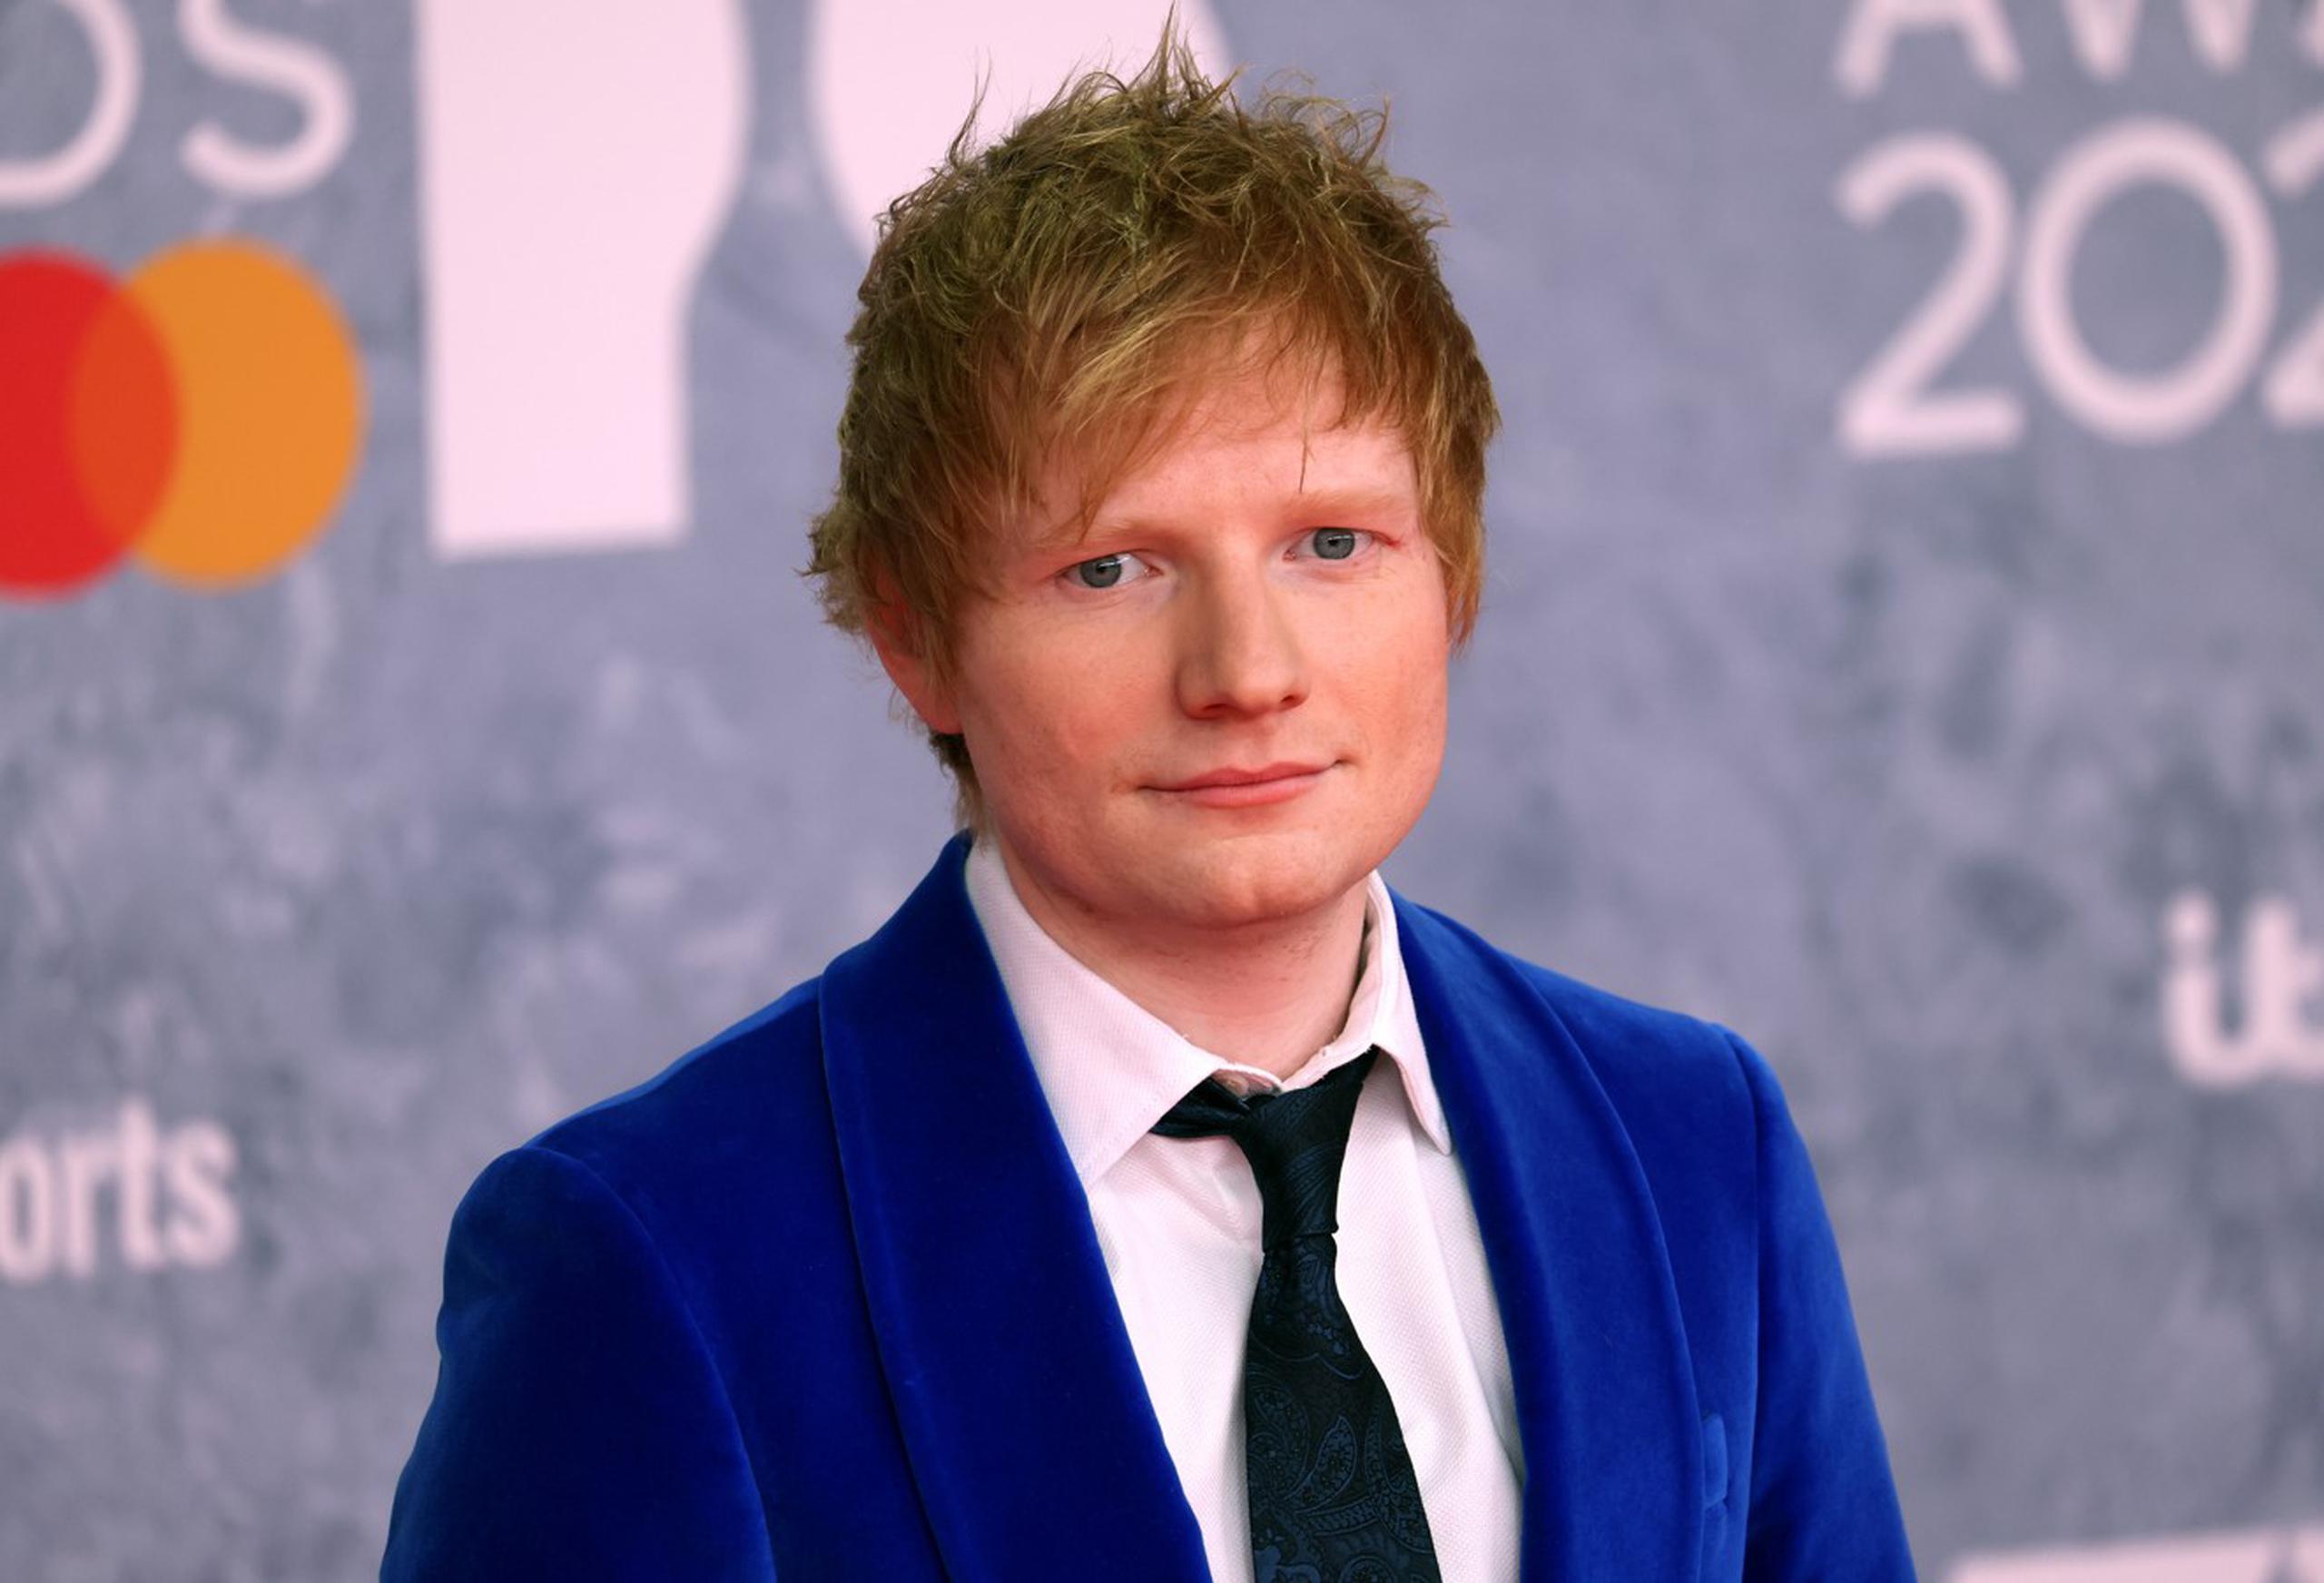 La familia de Ed Townsend, coautor del tema "Let's Get It On" de Marvin Gaye, acusó a Ed Sheeran de violar sus derechos de autor, alegando que su éxito de 2014 tenía " similitudes sorprendentes” y “elementos comunes manifiestos” con la famosa canción de 1973.